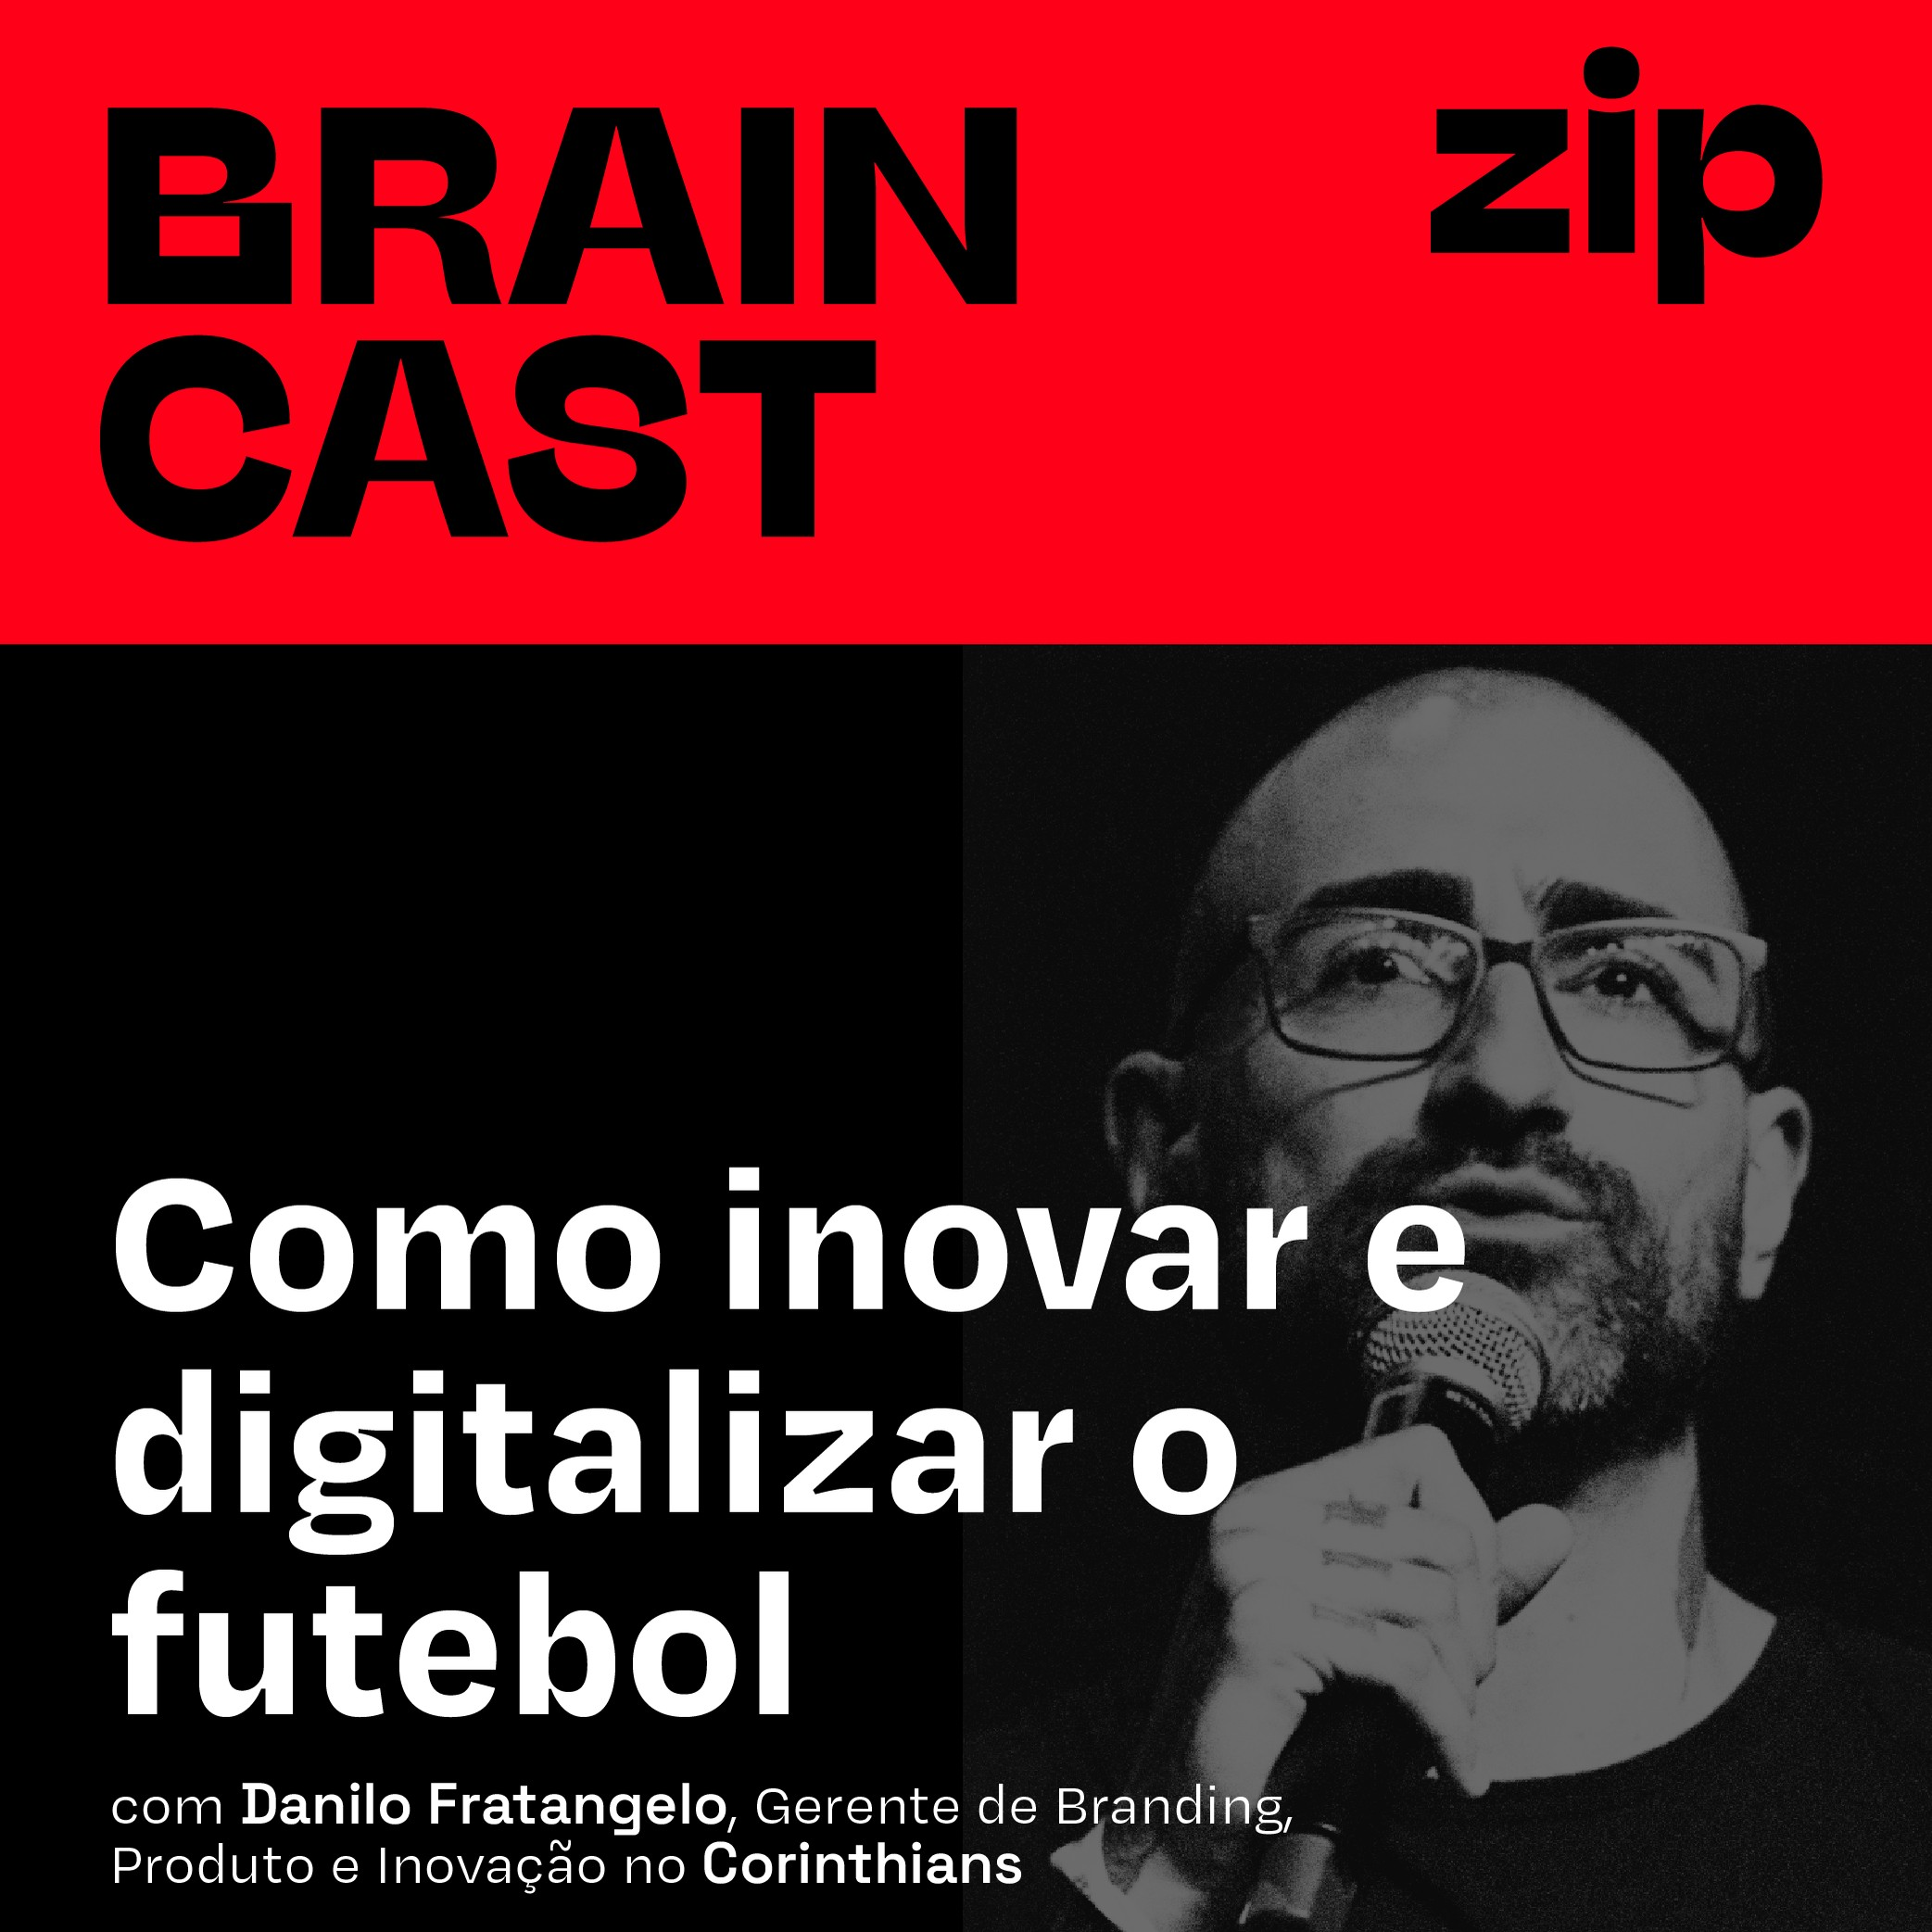 [zip] Como inovar e digitalizar o futebol | com Danilo Fratangelo, Gerente de Branding, Produto e Inovação no Corinthians